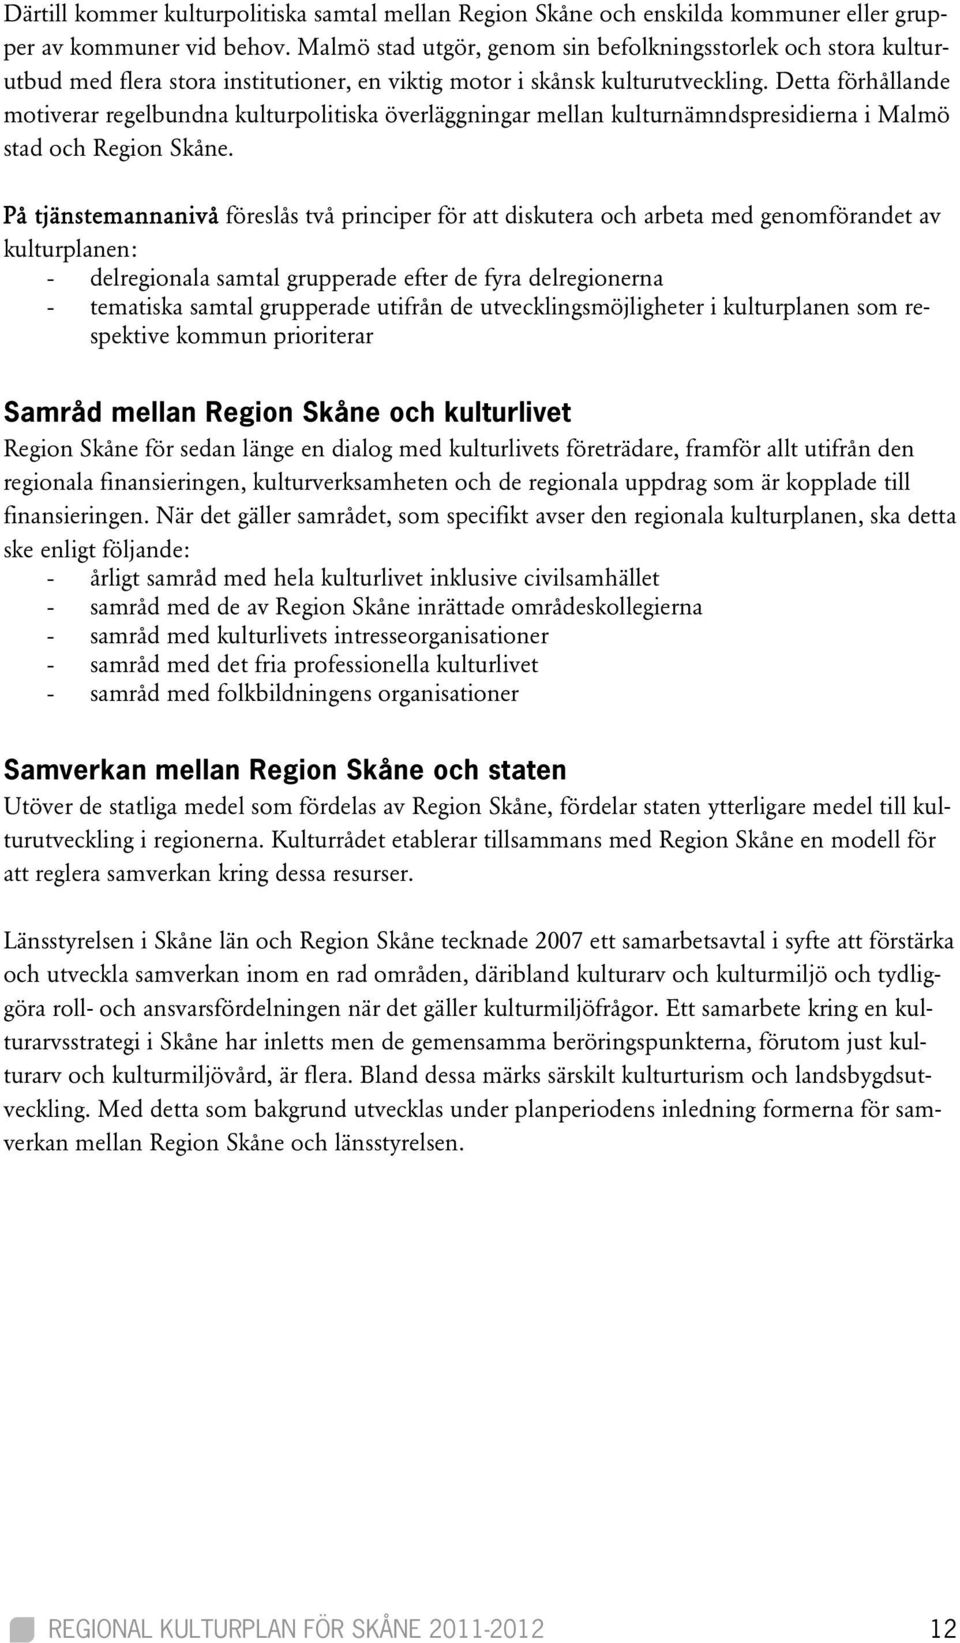 Detta förhållande motiverar regelbundna kulturpolitiska överläggningar mellan kulturnämndspresidierna i Malmö stad och Region Skåne.